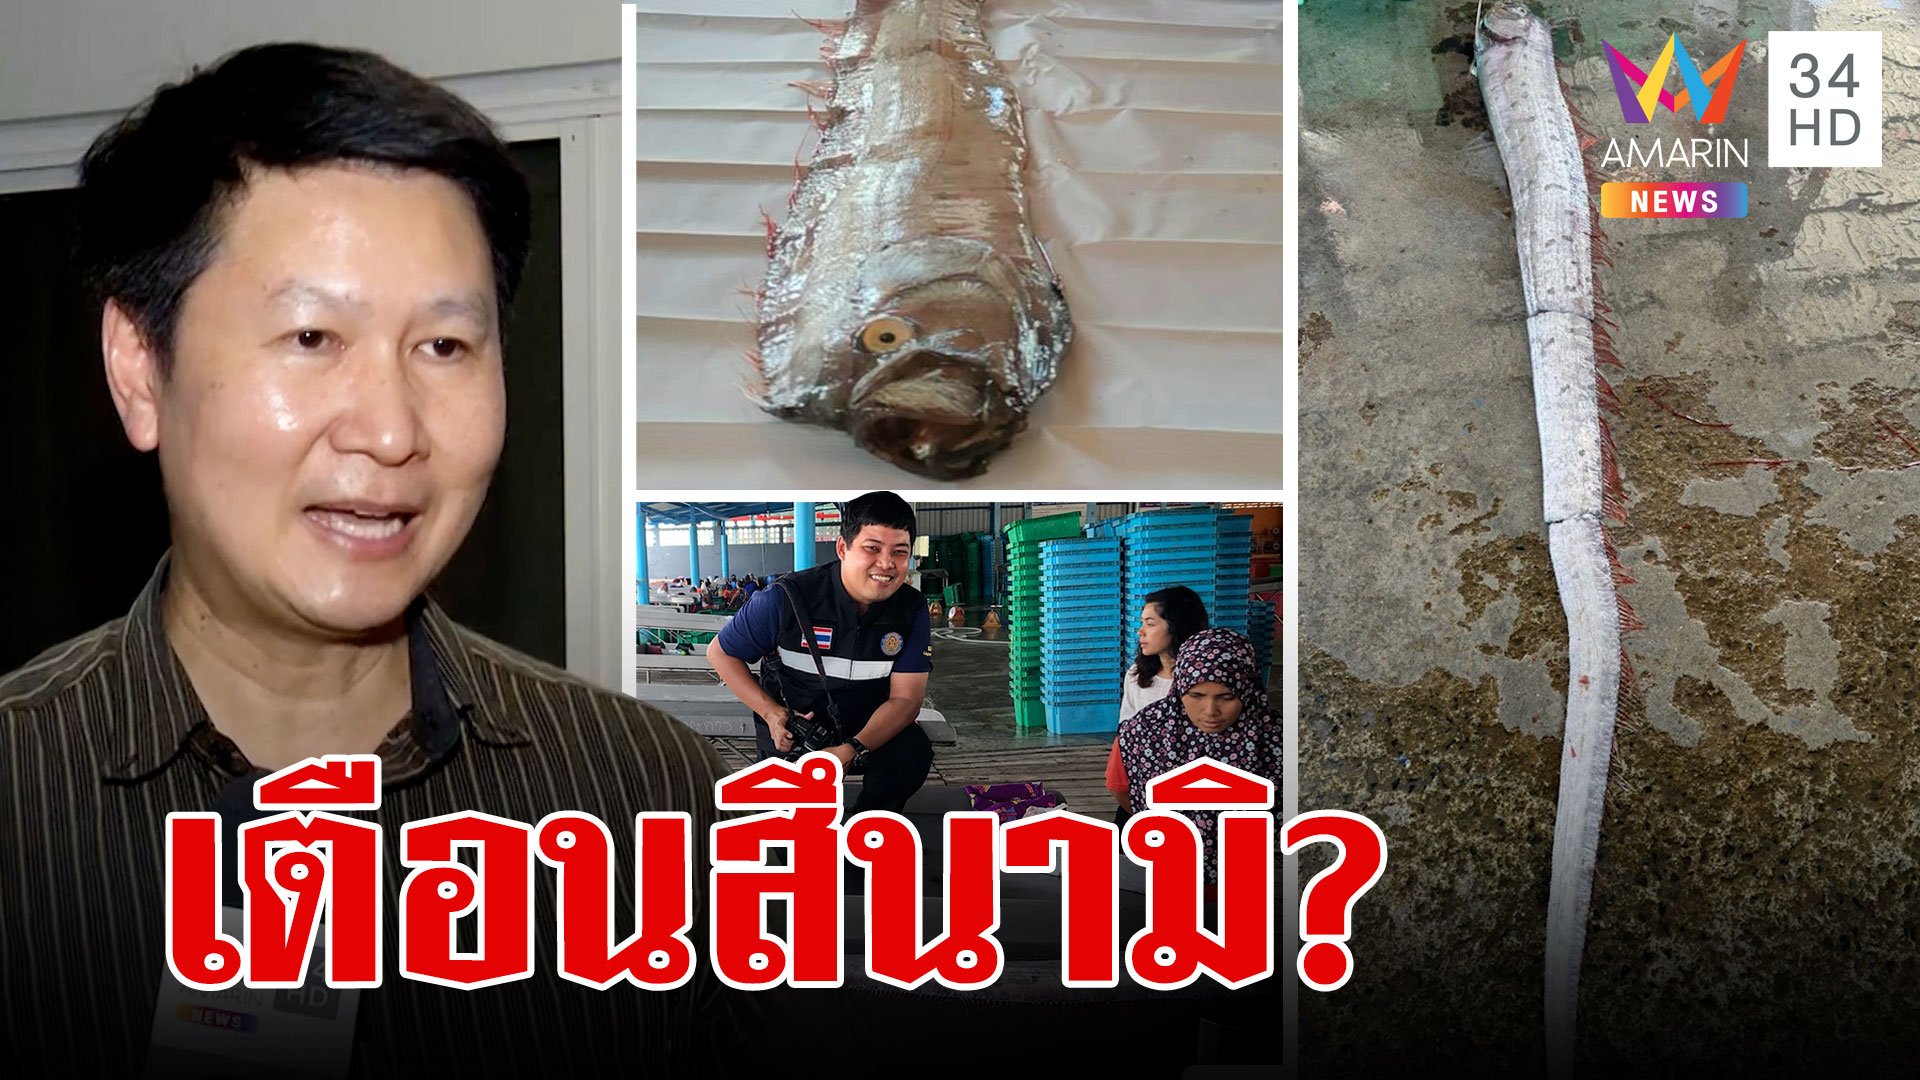 ปลาพญานาคโผล่ในไทยผวาสึนามิ อ.เจษฎา เชื่อมวลน้ำเปลี่ยนวนเข้าไทย | ทุบโต๊ะข่าว | 4 ม.ค. 67 | AMARIN TVHD34